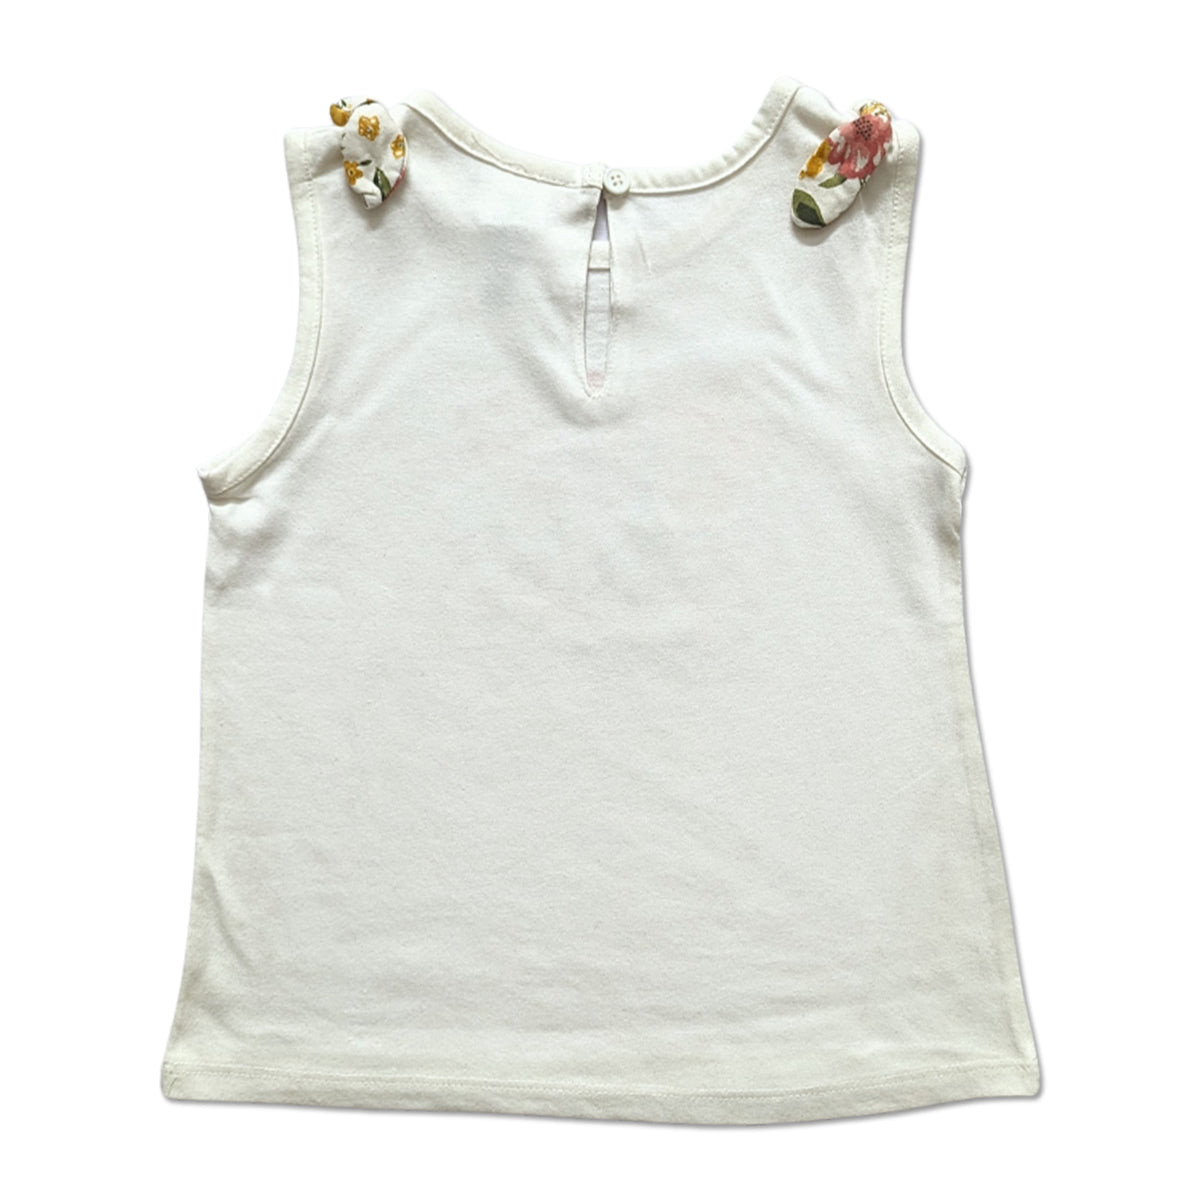 Brand Expo Premium Quality Branded Sleeveless T-Shirt for Girl's